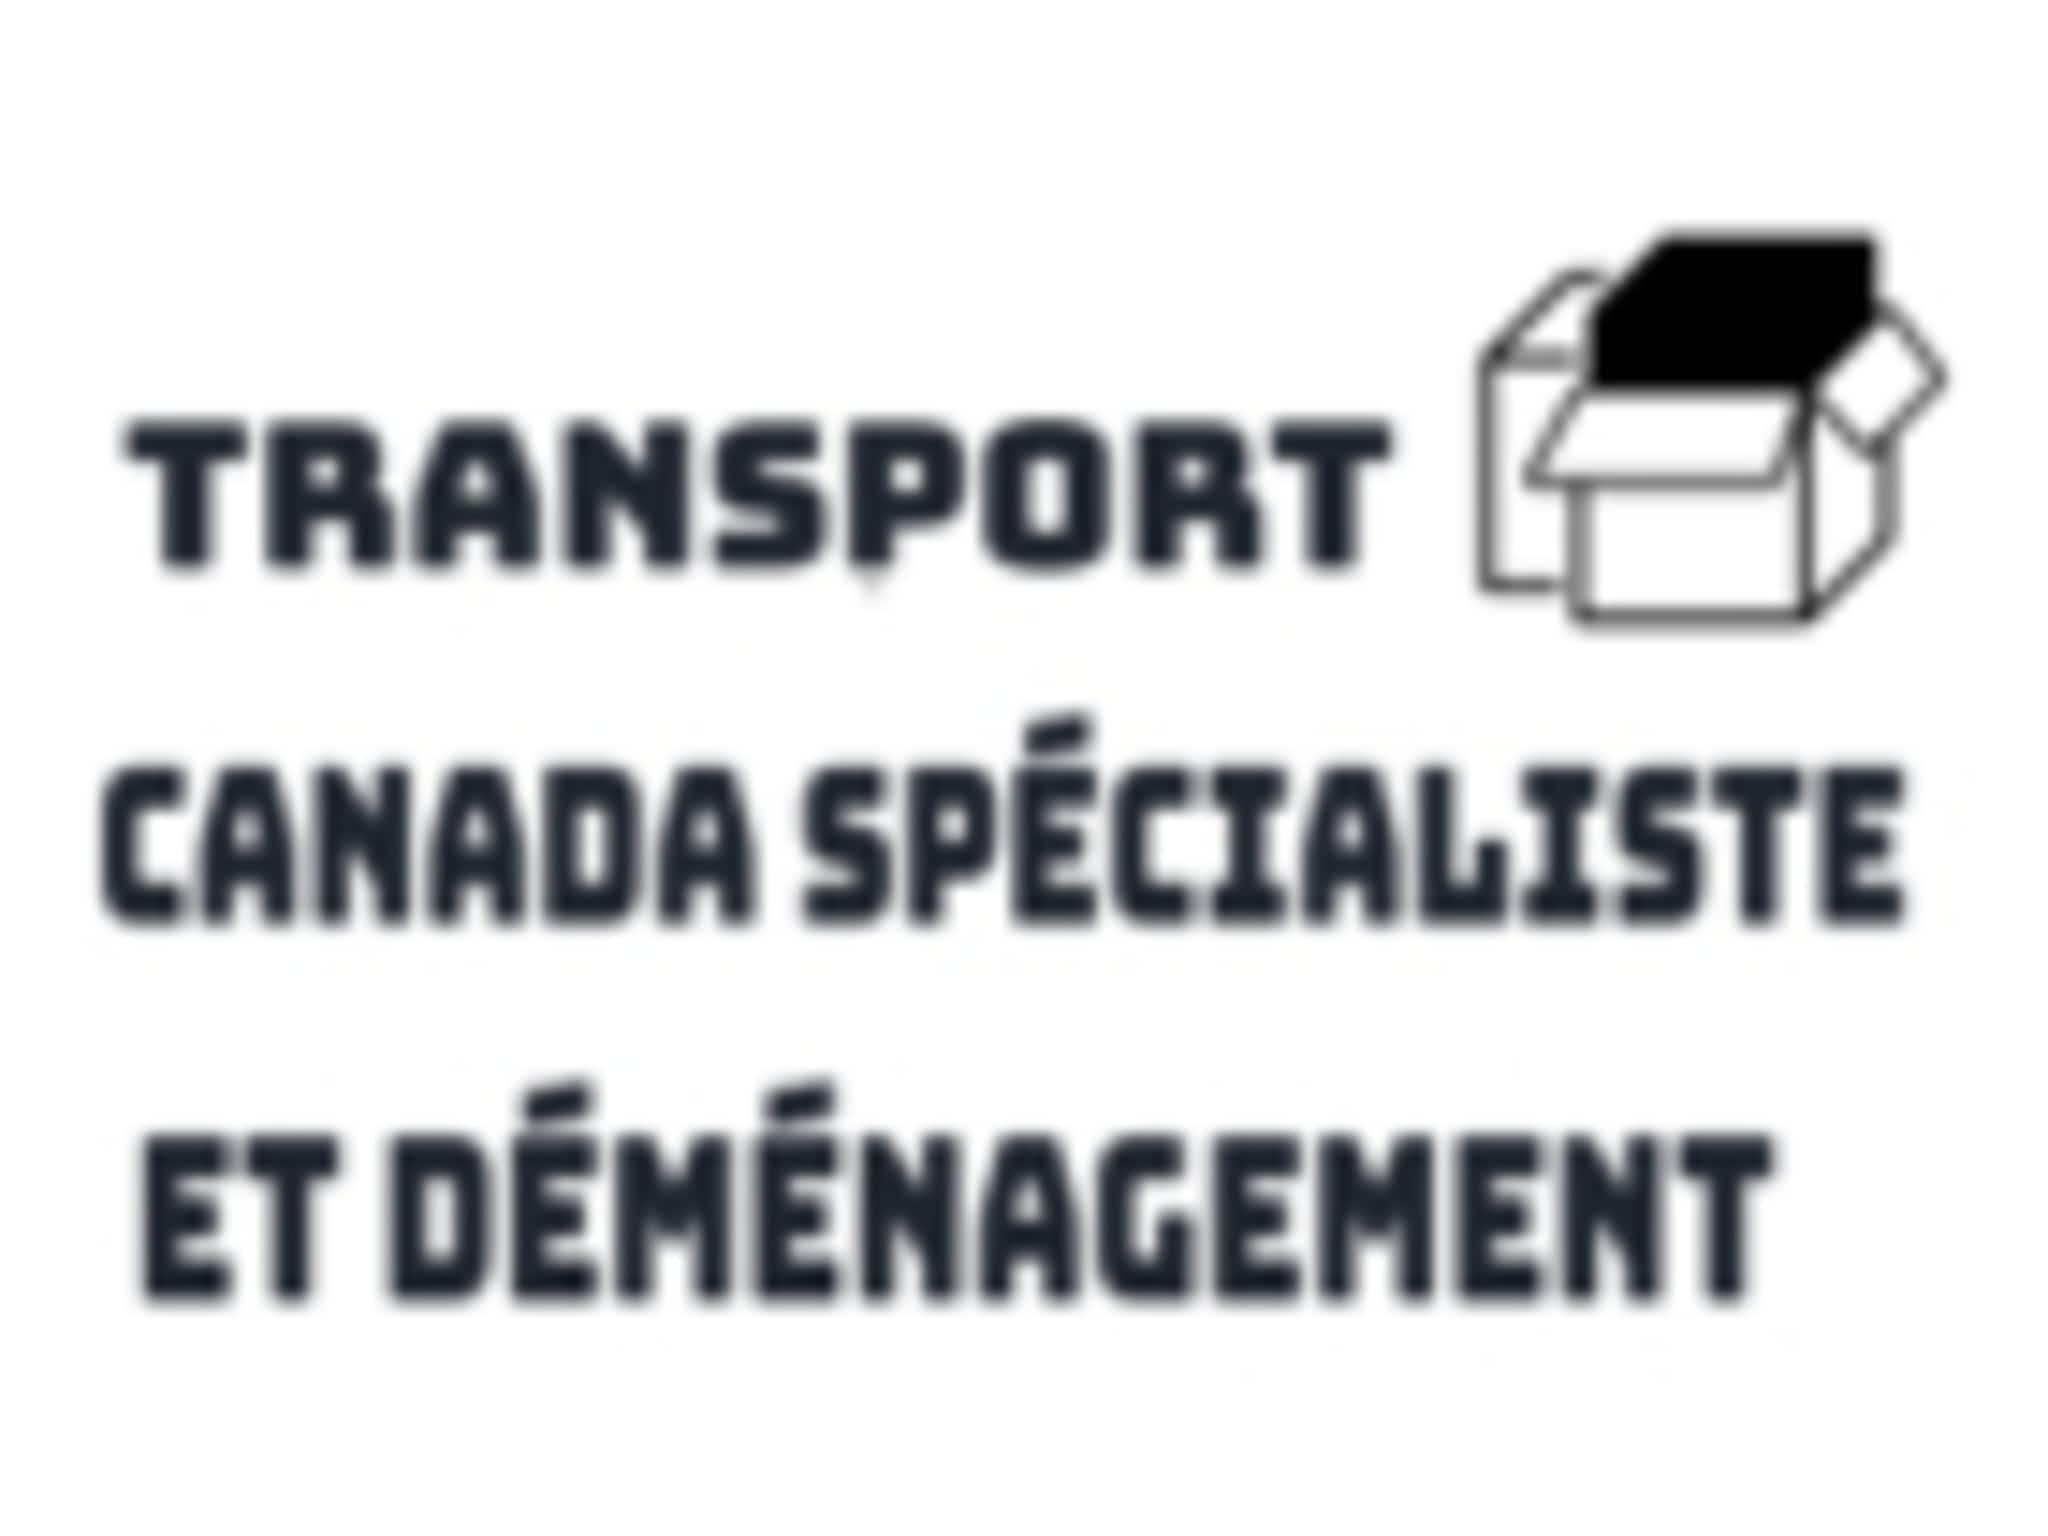 photo Transport Canada Spécialiste et Déménagement